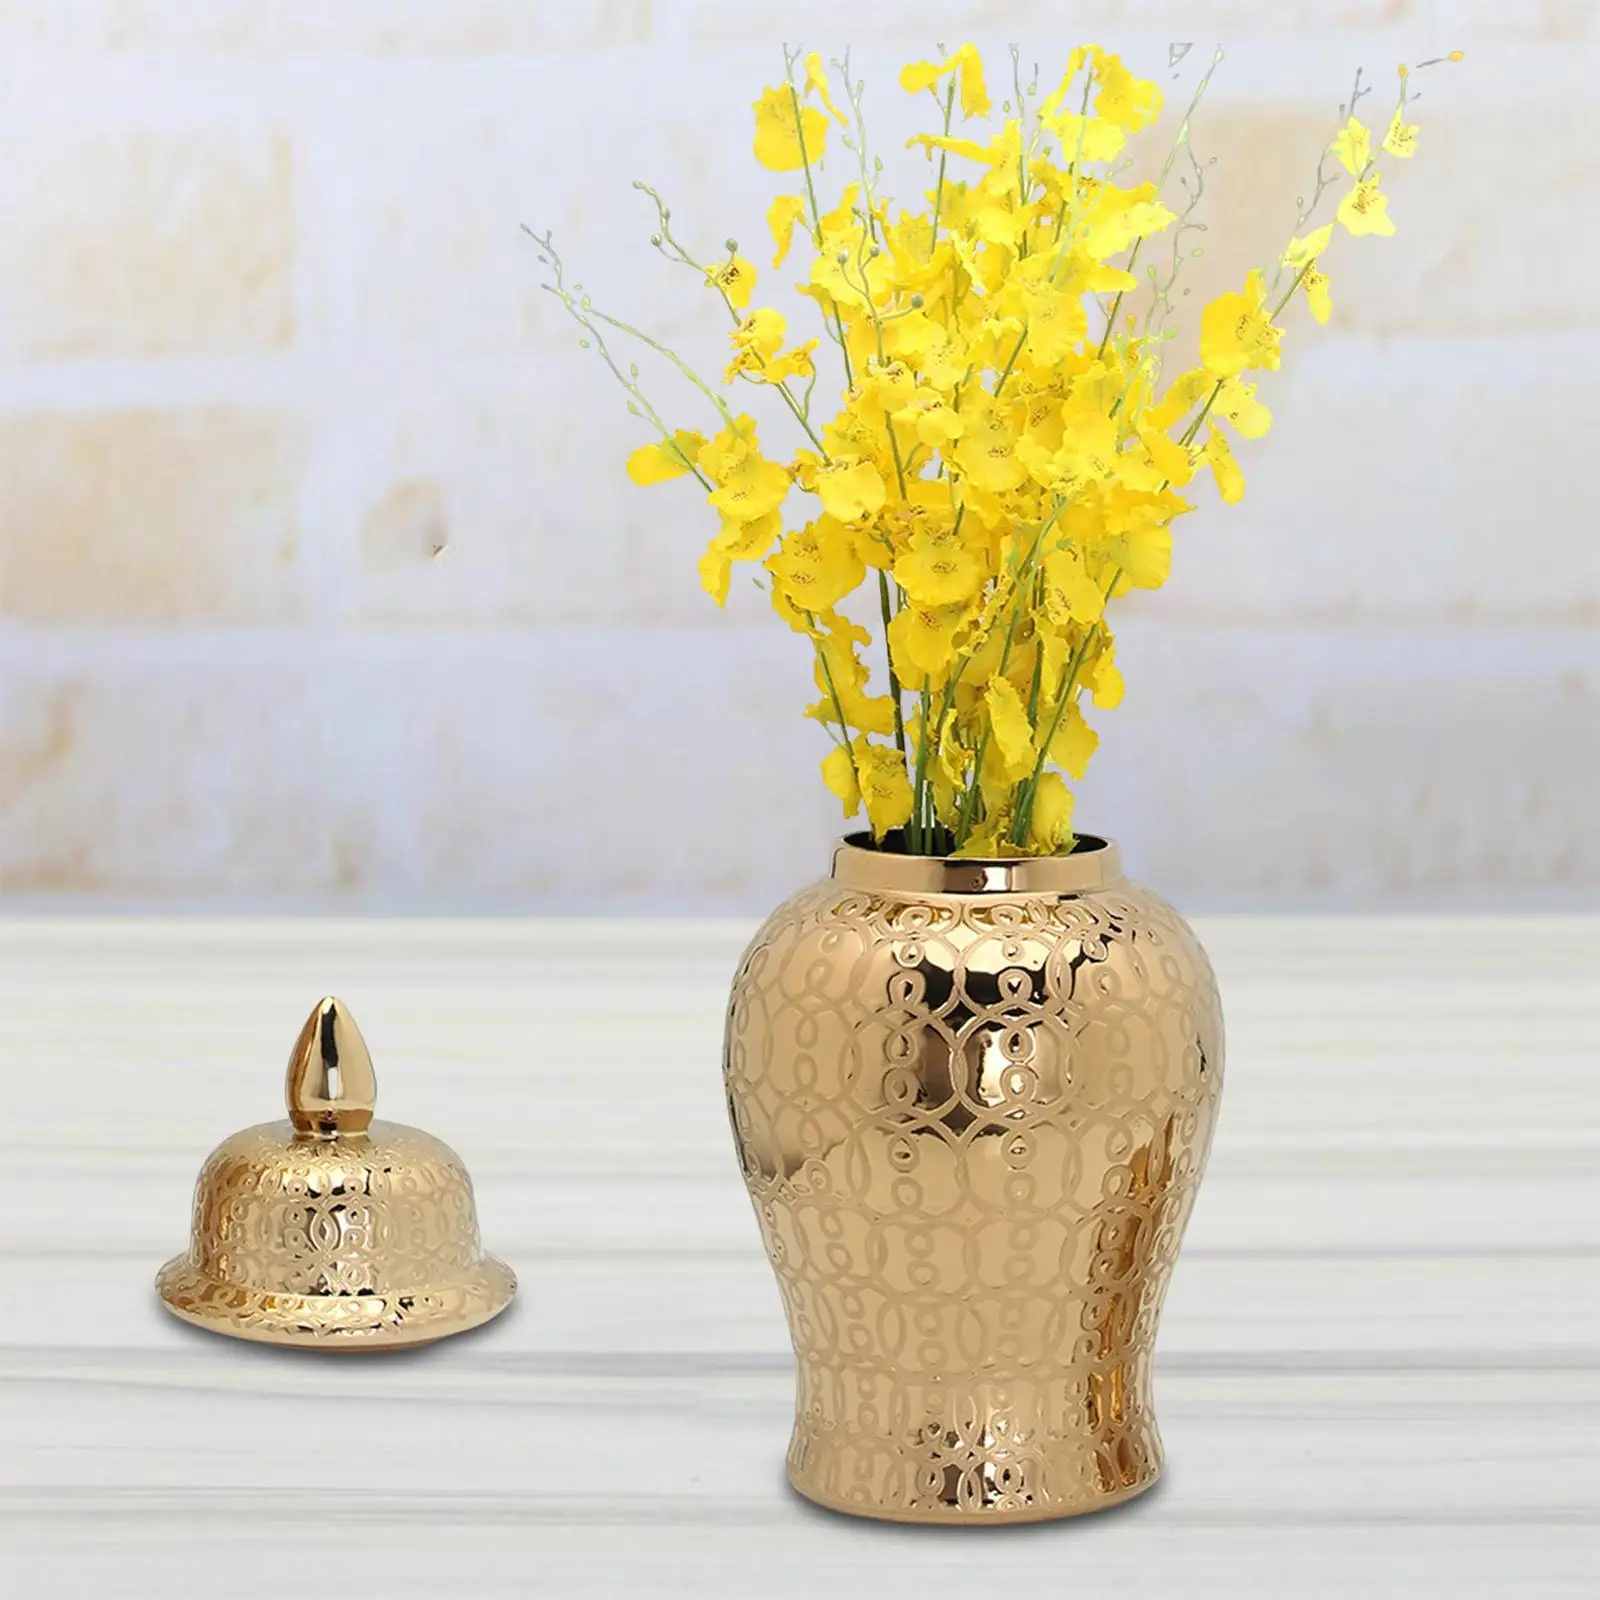 Ginger Jar Decorative Porcelain Modern for Gift Ornament Home Decoration